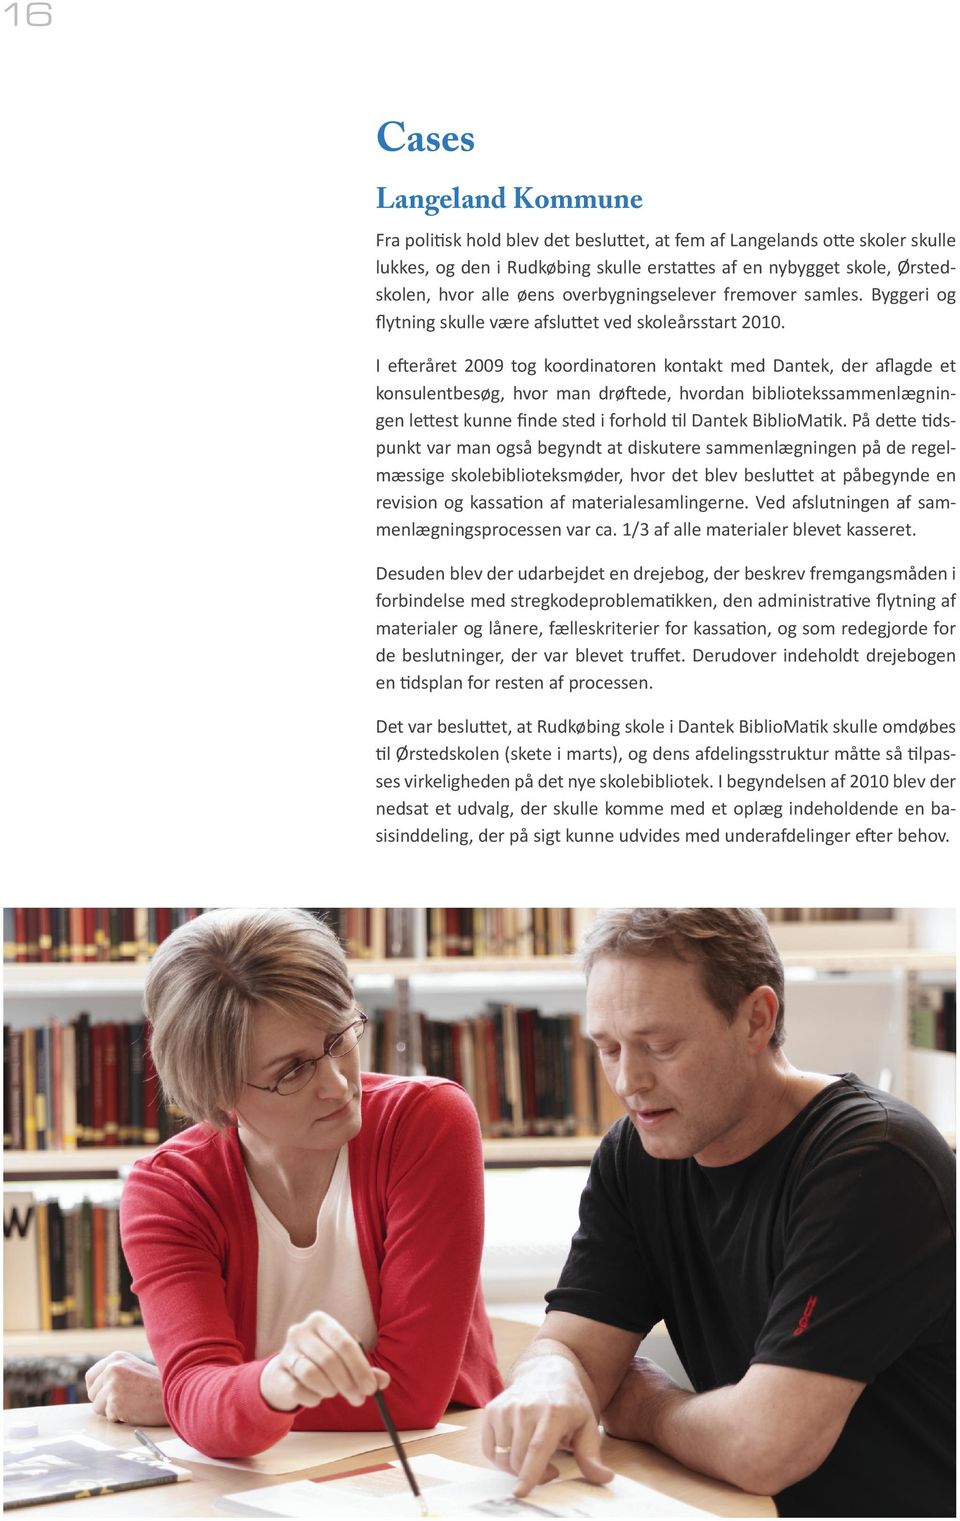 I efteråret 2009 tog koordinatoren kontakt med Dantek, der aflagde et konsulentbesøg, hvor man drøftede, hvordan bibliotekssammenlægningen lettest kunne finde sted i forhold til Dantek BiblioMatik.